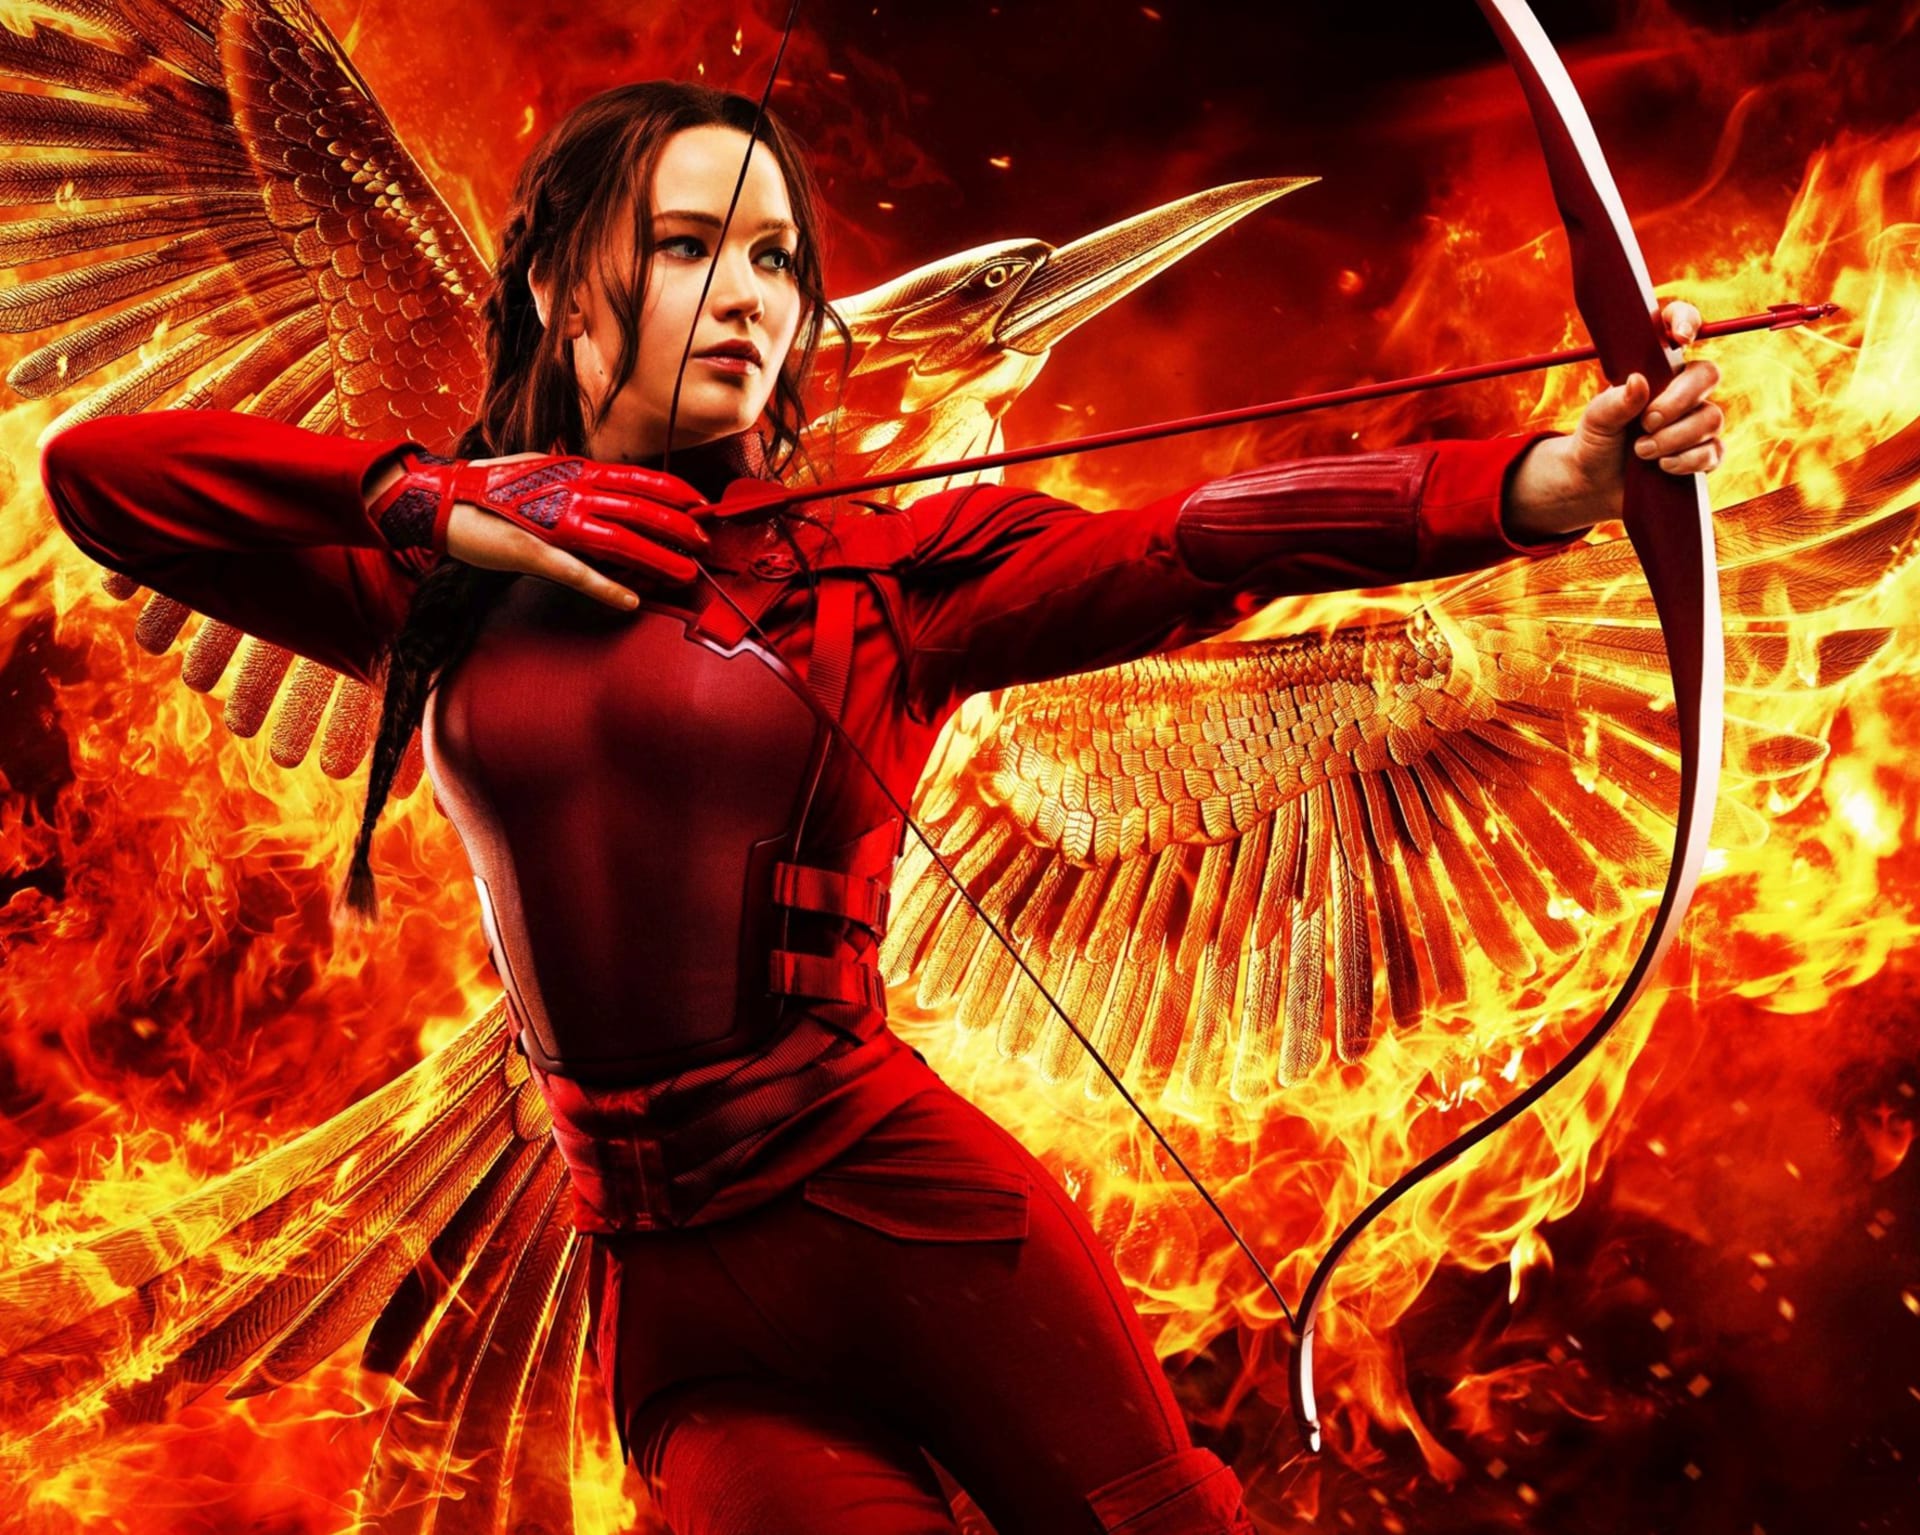 V Hunger Games tvořila hlavní hybatelku děje Jennifer Lawrence v roli Katniss Everdeen.